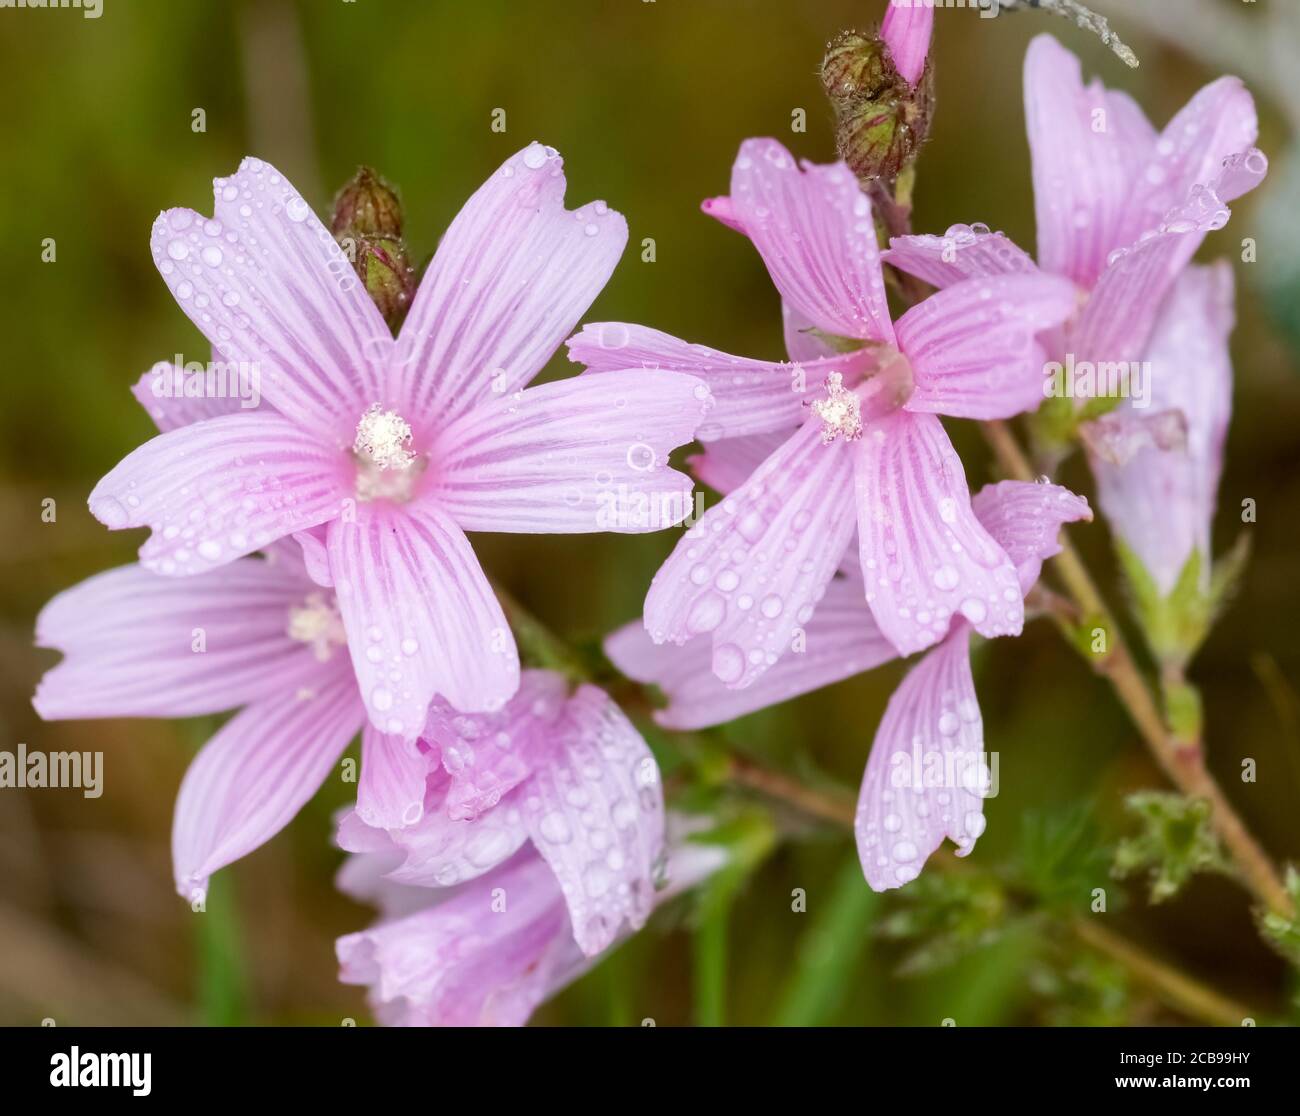 Malva covered in raindrops in bloom. Stock Photo